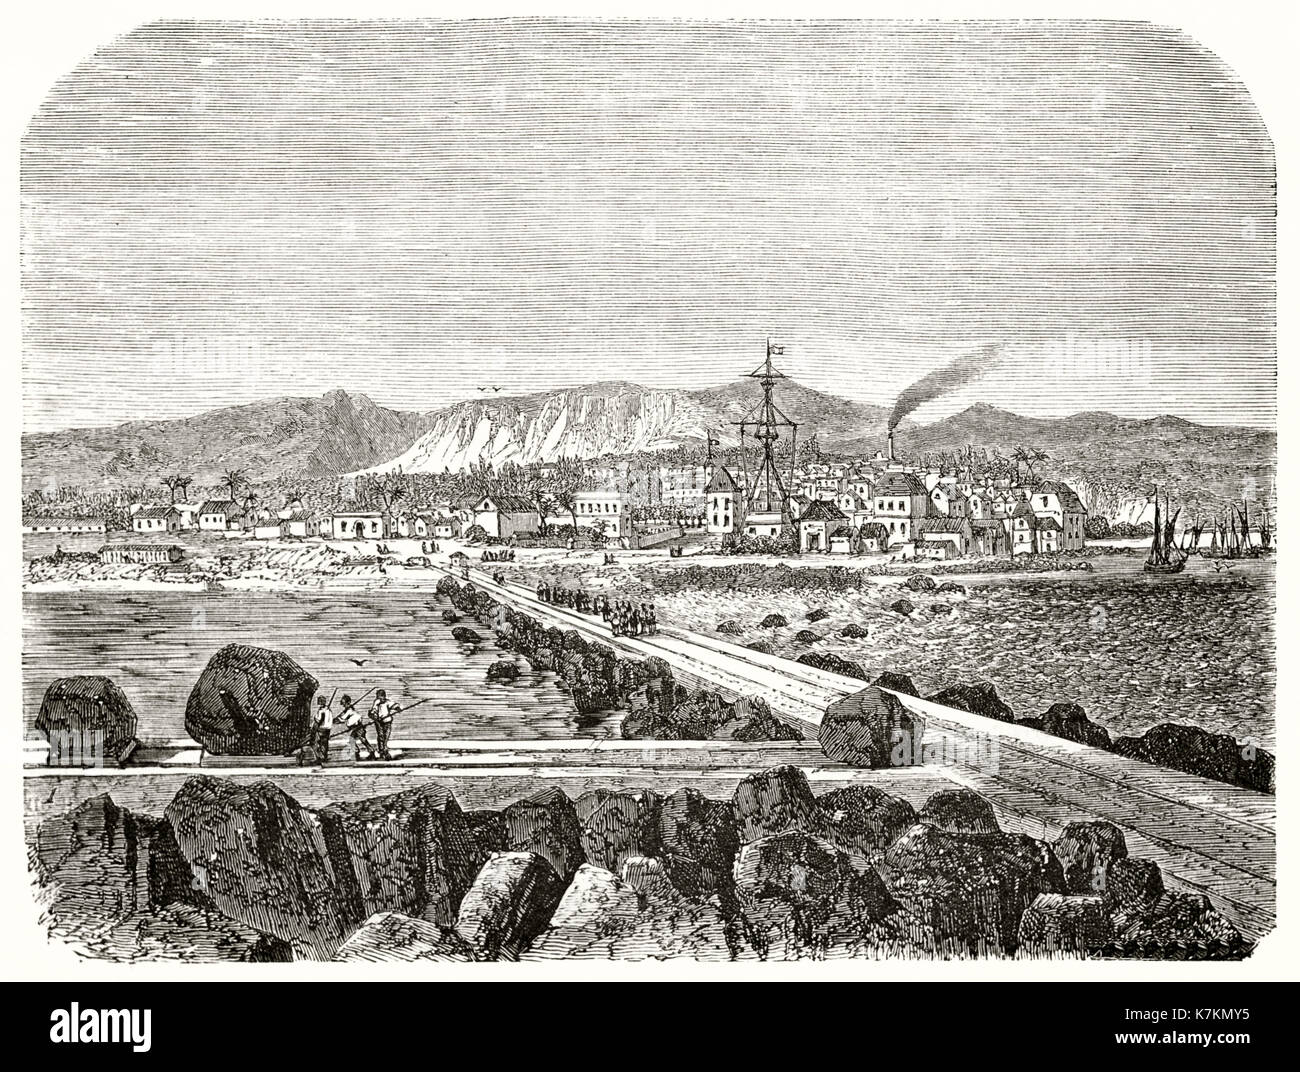 Old view of Saint-Pierre, Reunion island (port construction). By Therond after Roussin, publ. on Le Tour du Monde, Paris, 1862 Stock Photo